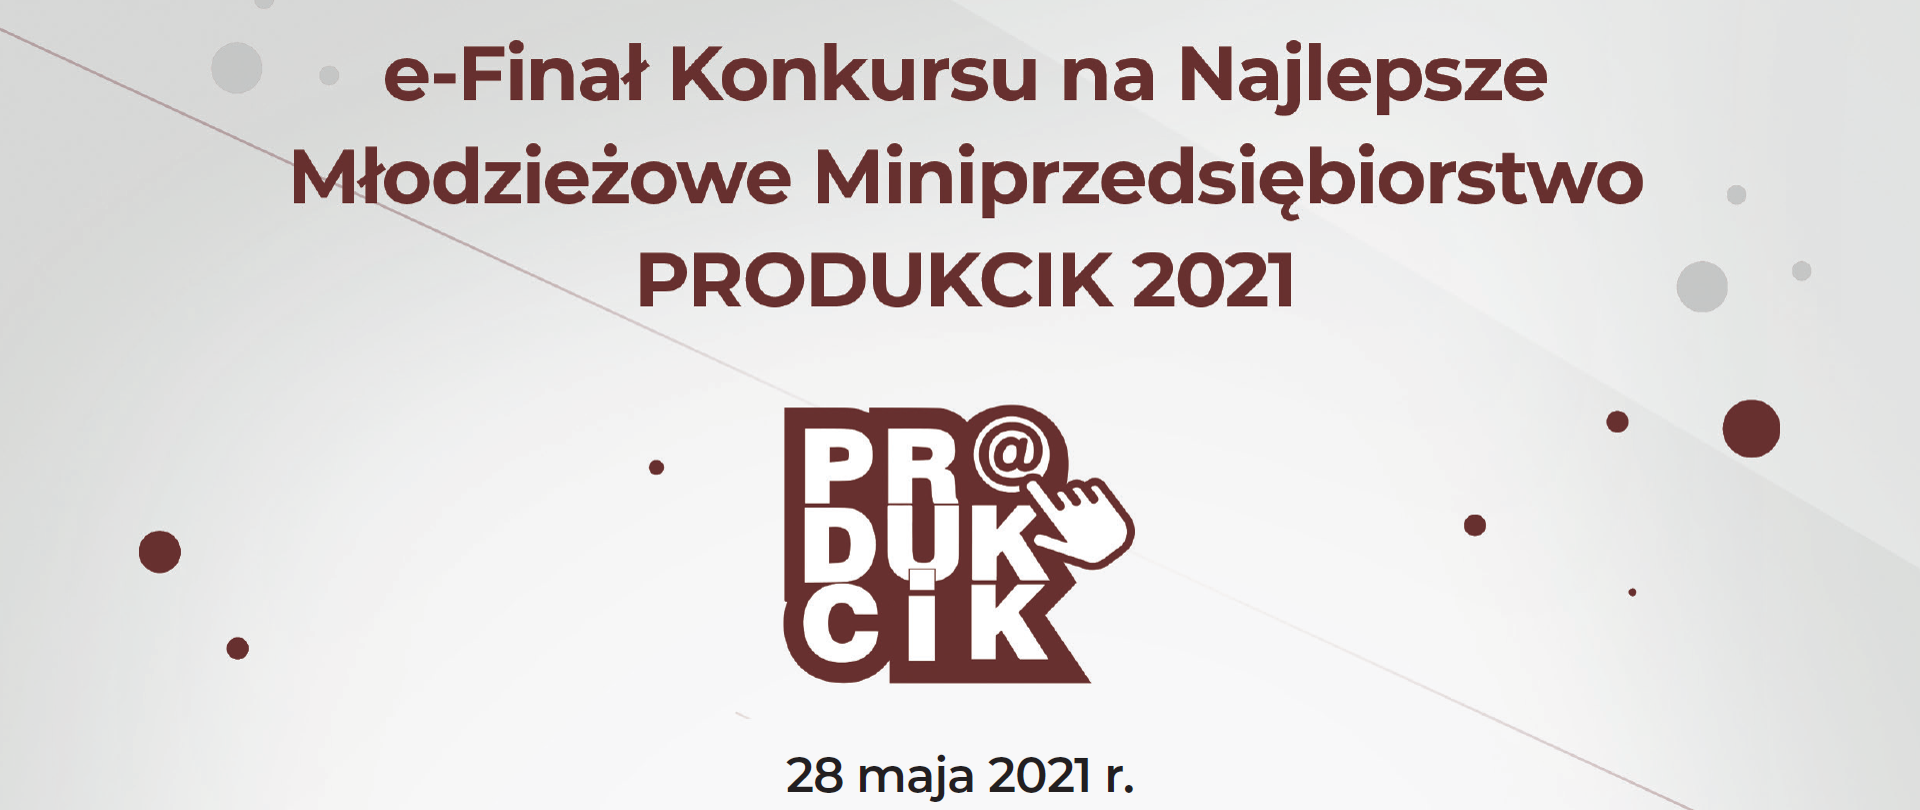 Logo konkursu Produkcik 2021